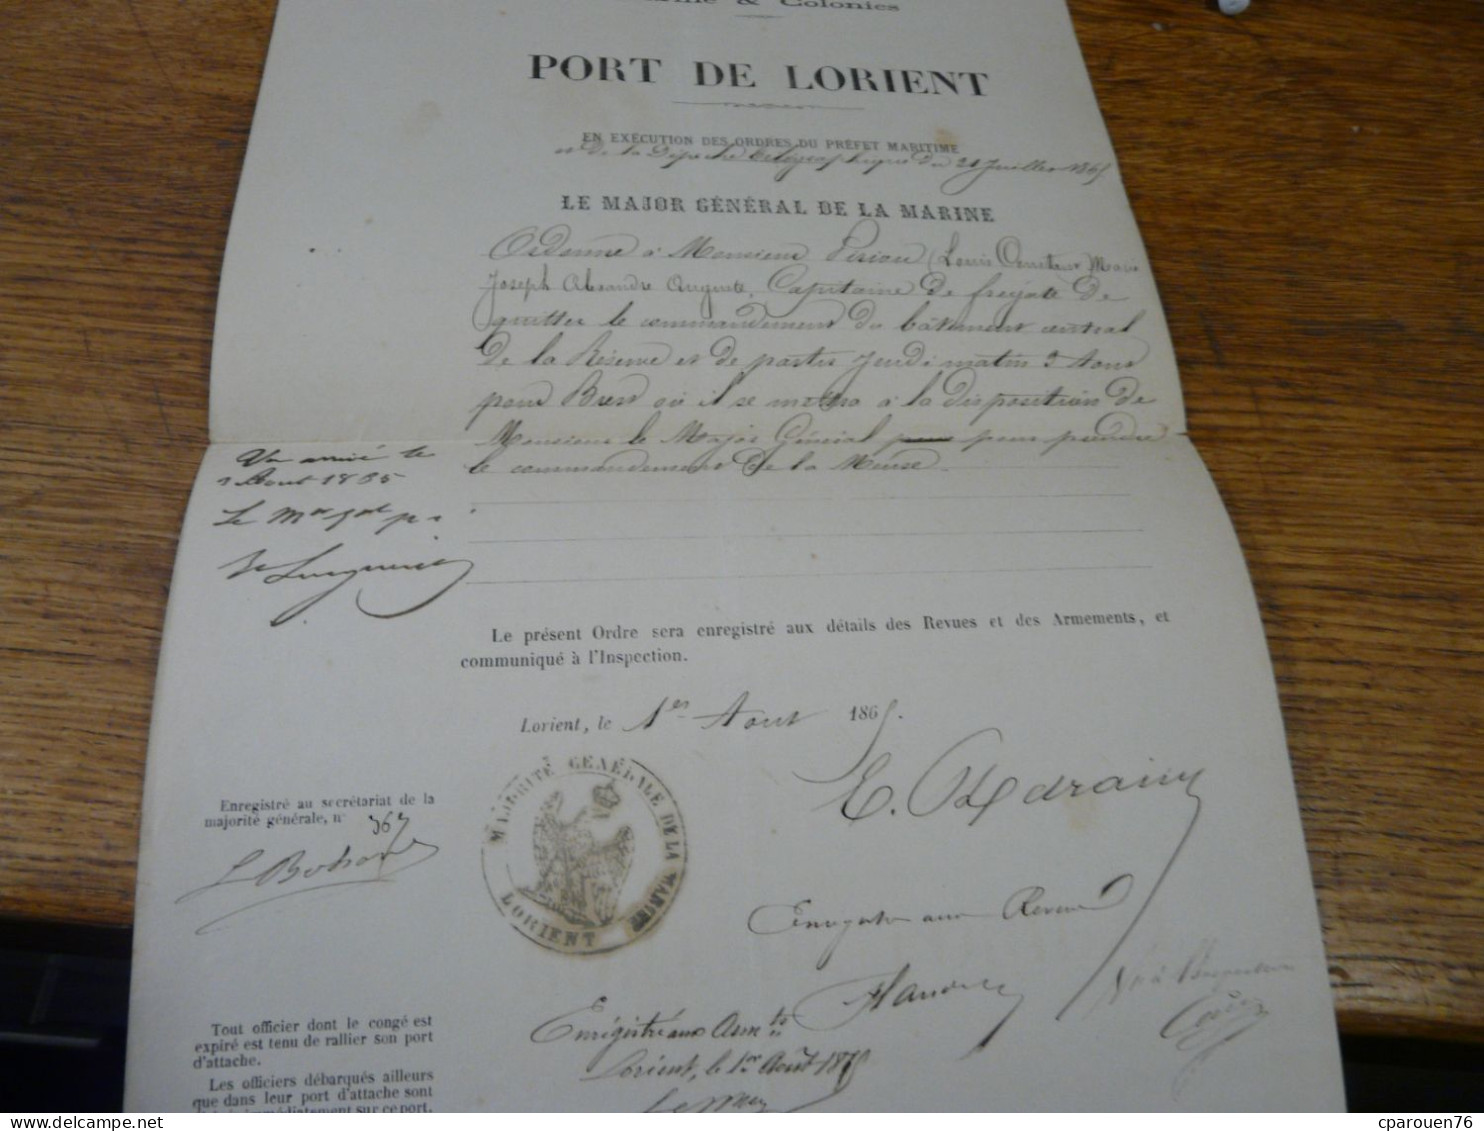 carrière militaire officier marine royale et empire 1833 1869 Piriou Louis Contant Marie Toulon Lorient Brest Fourrier